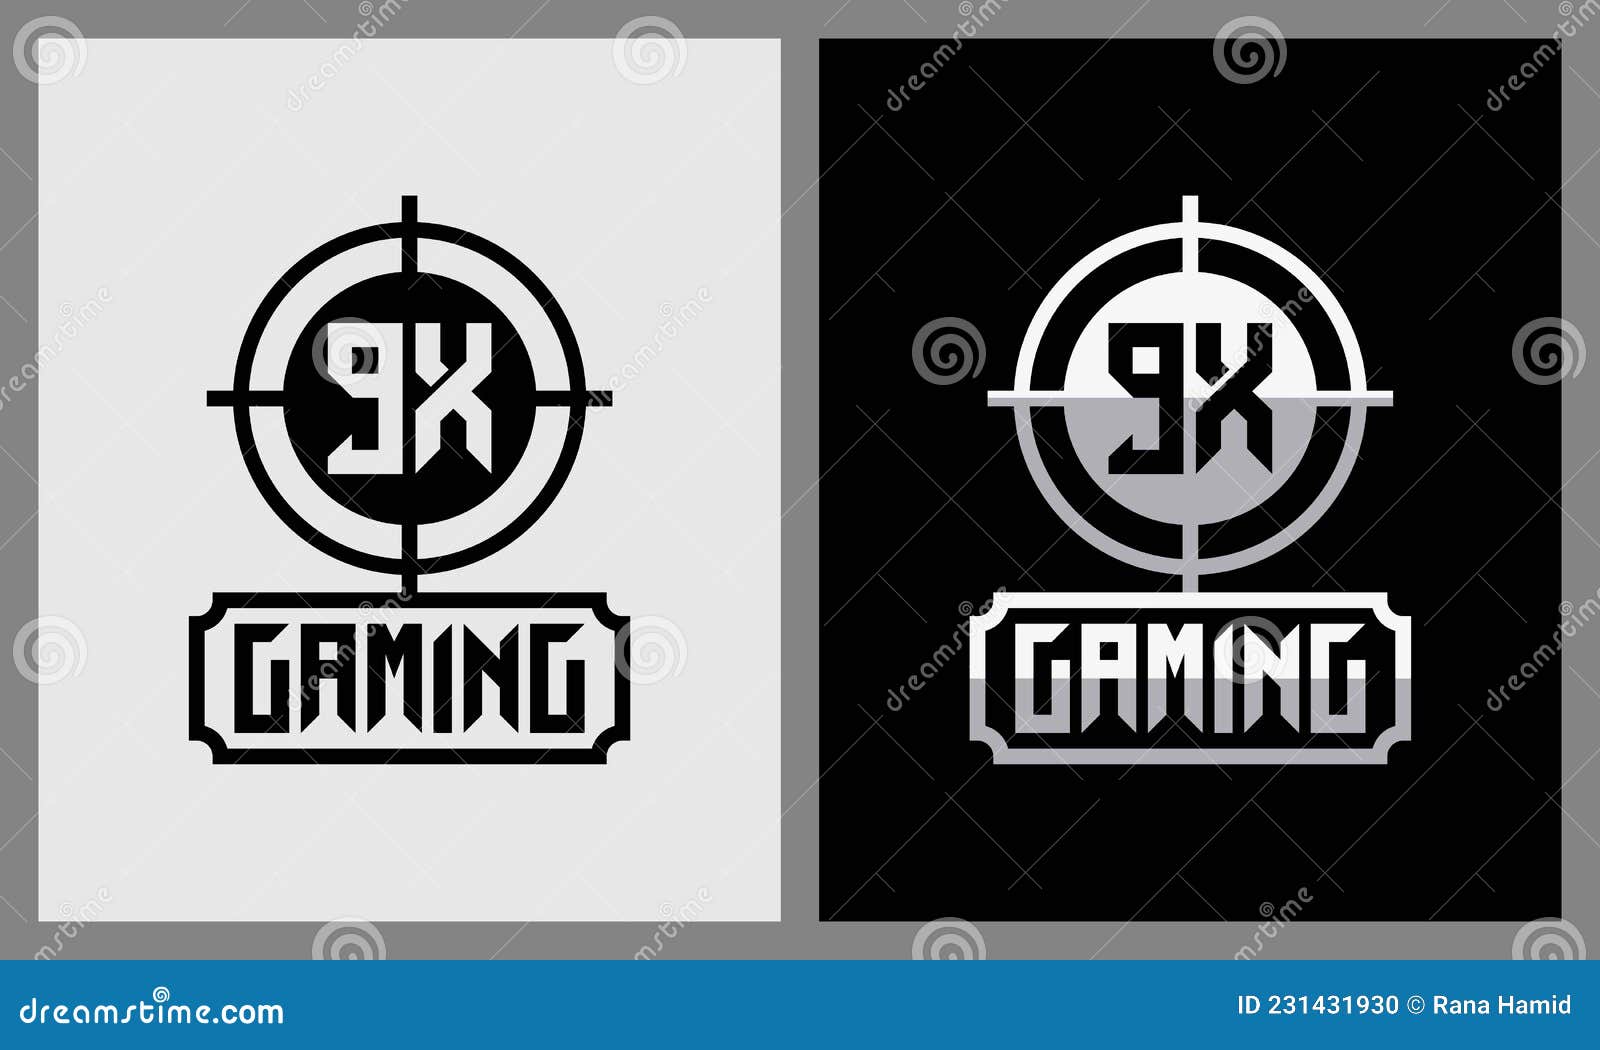 gaming logo free download template, logo